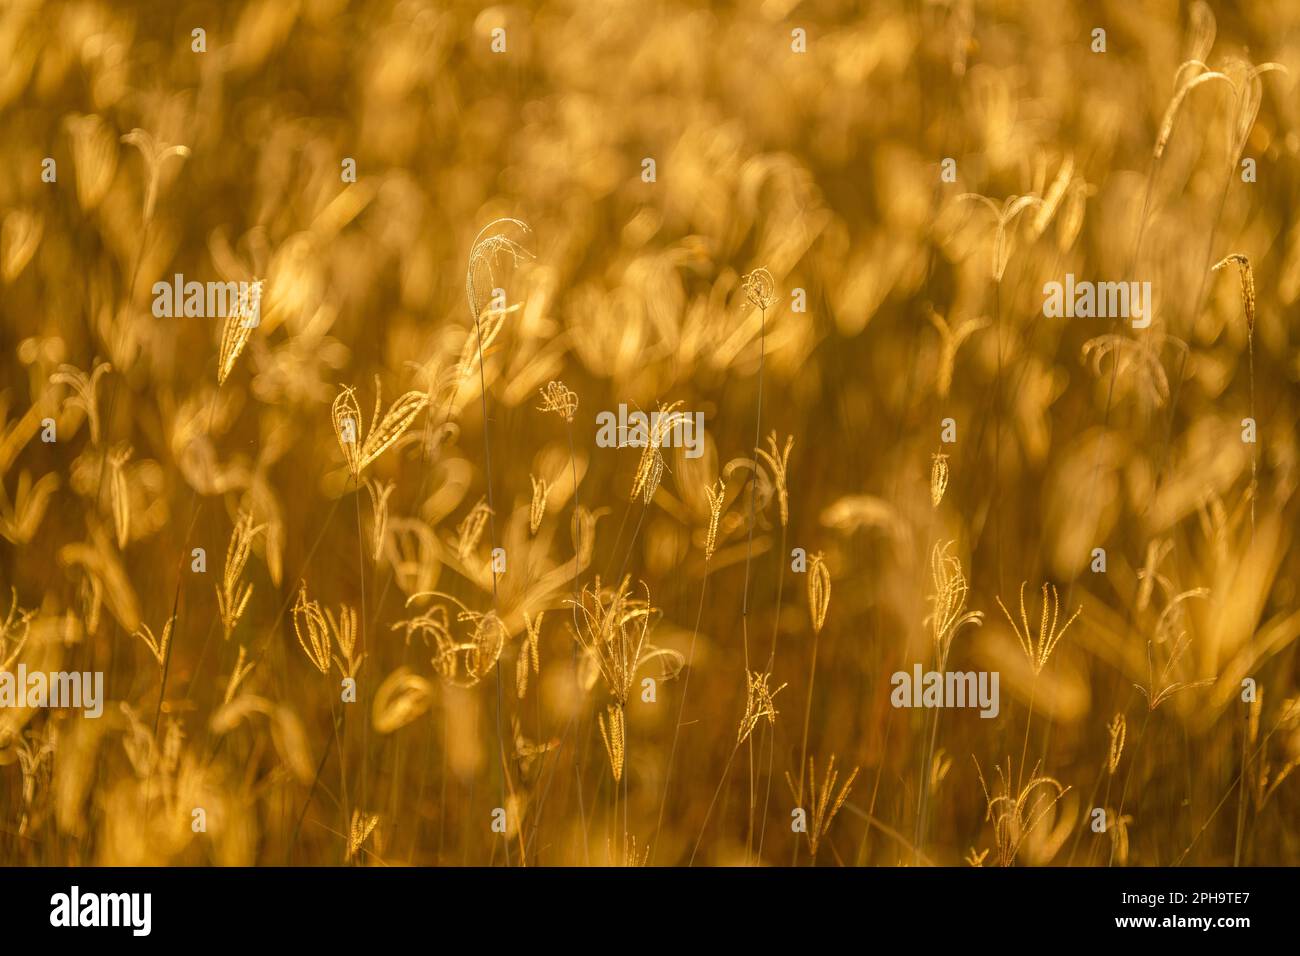 Primo piano, dettagli di lame di erba in luce dorata. Retroilluminata della luce del tramonto africana. Texture di modelli astratti. Parco Nazionale di Hwange, Zimbabwe Foto Stock